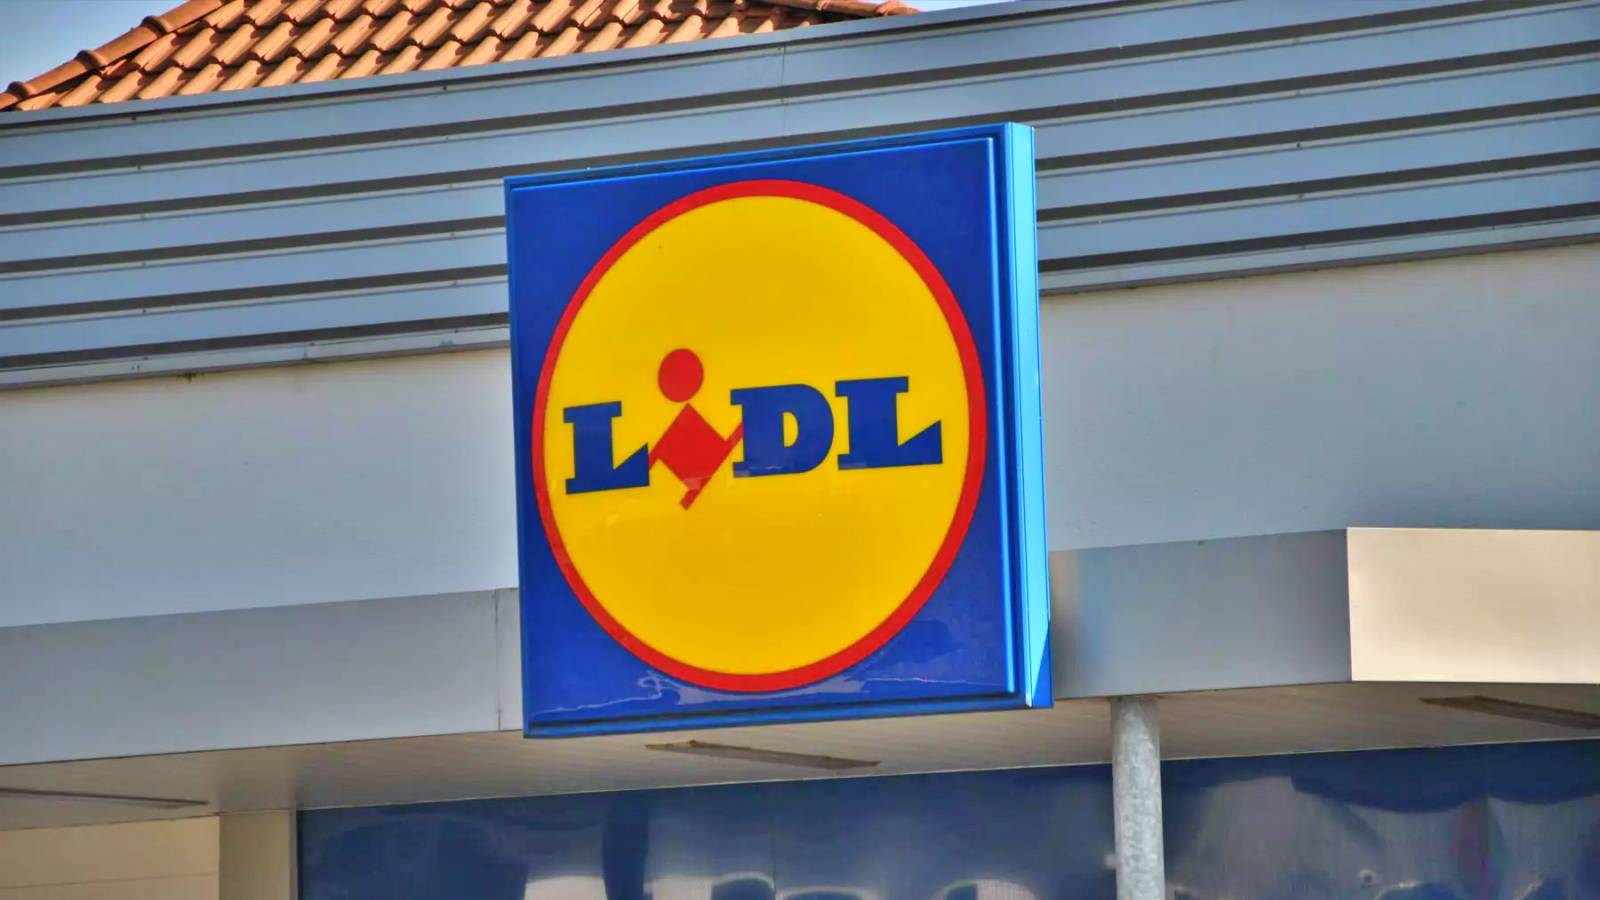 LIDL Romania Decisione presa nei negozi Novità annunciate ai clienti